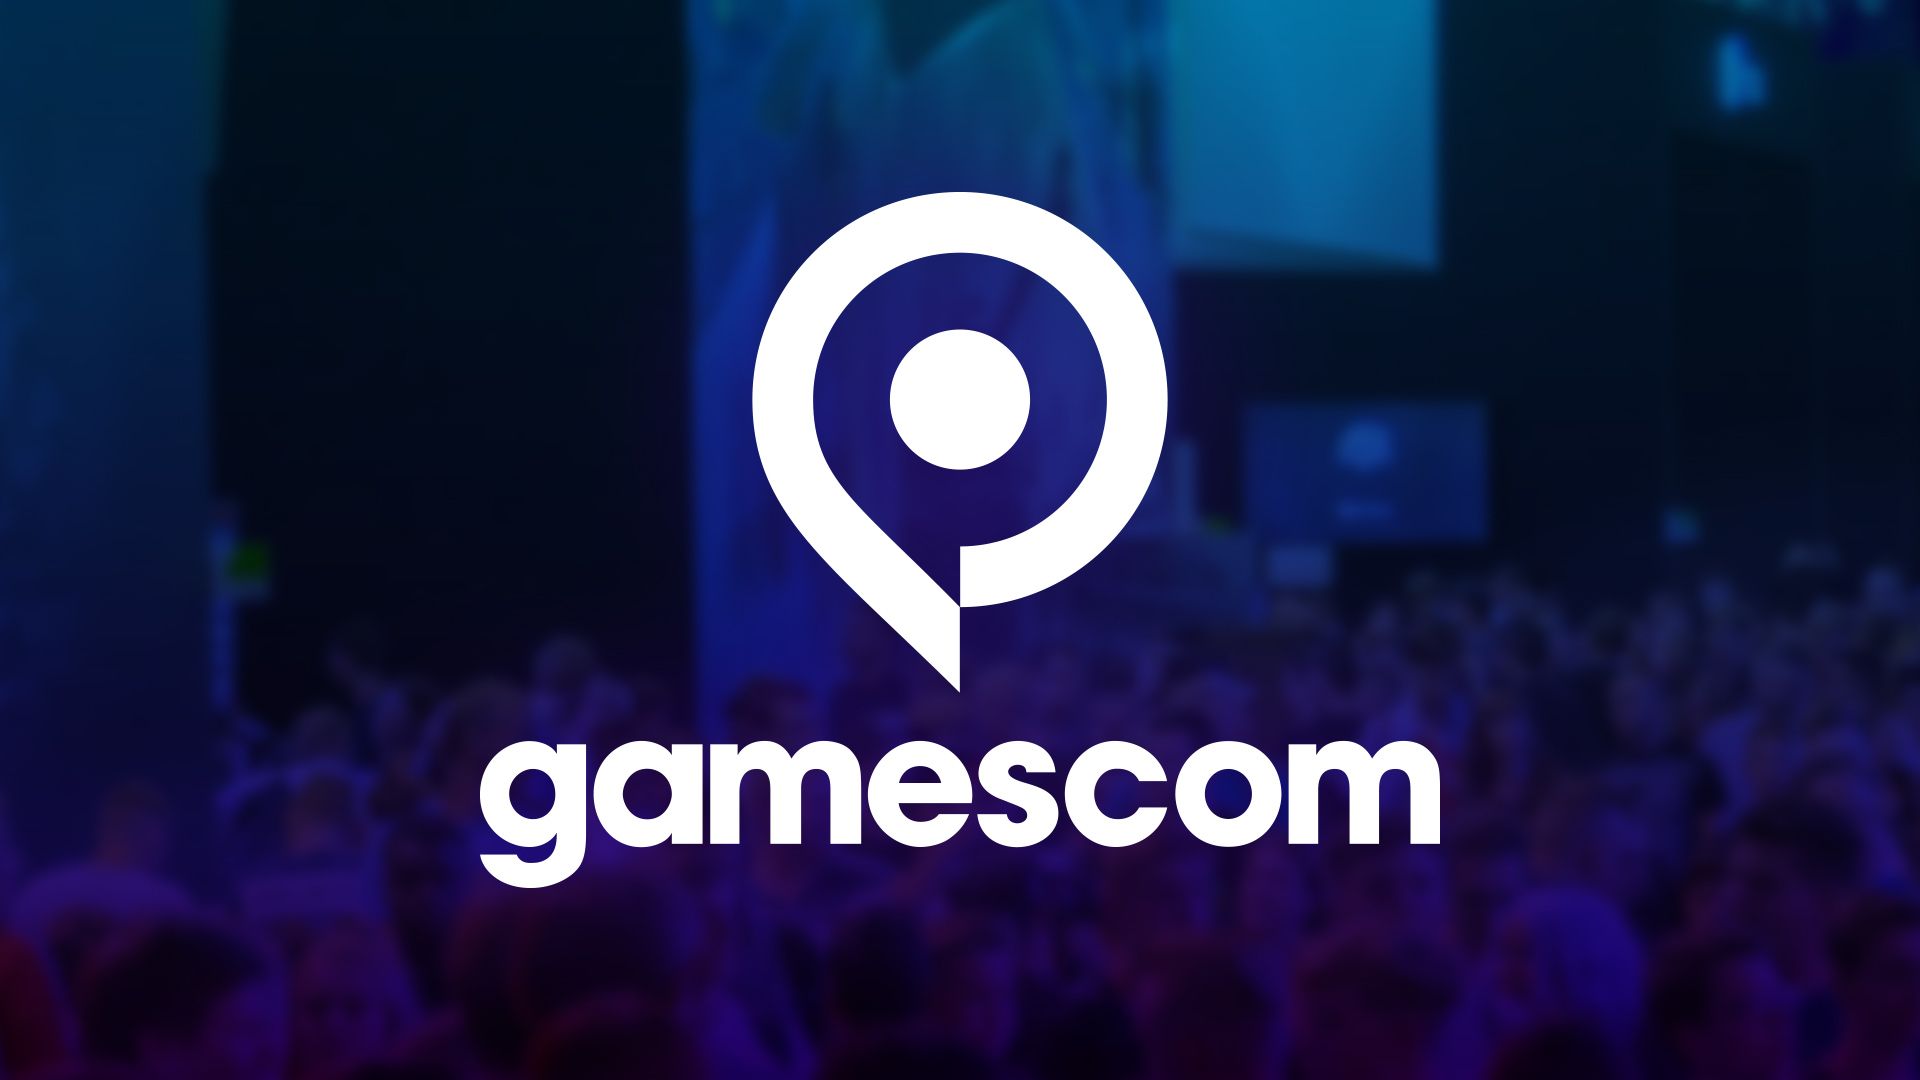 Gamescom Mike Shinoda